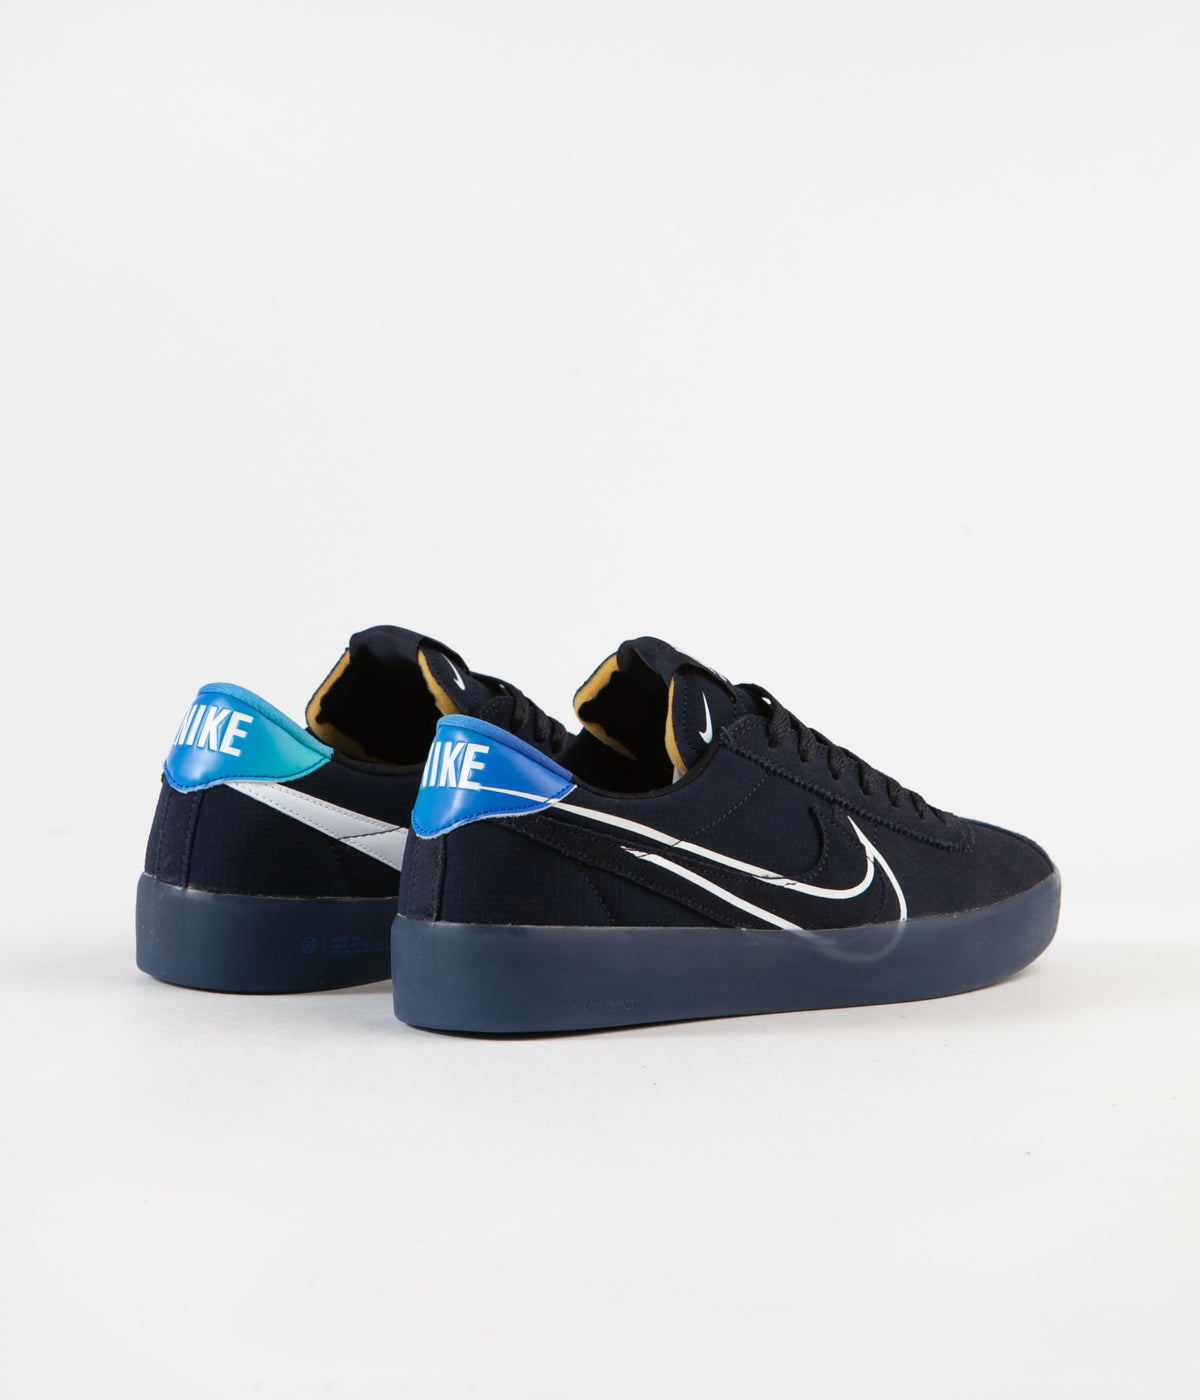 Nike SB Bruin React Shoes - Dark Obsidian / White - Hyper Jade | Flatspot